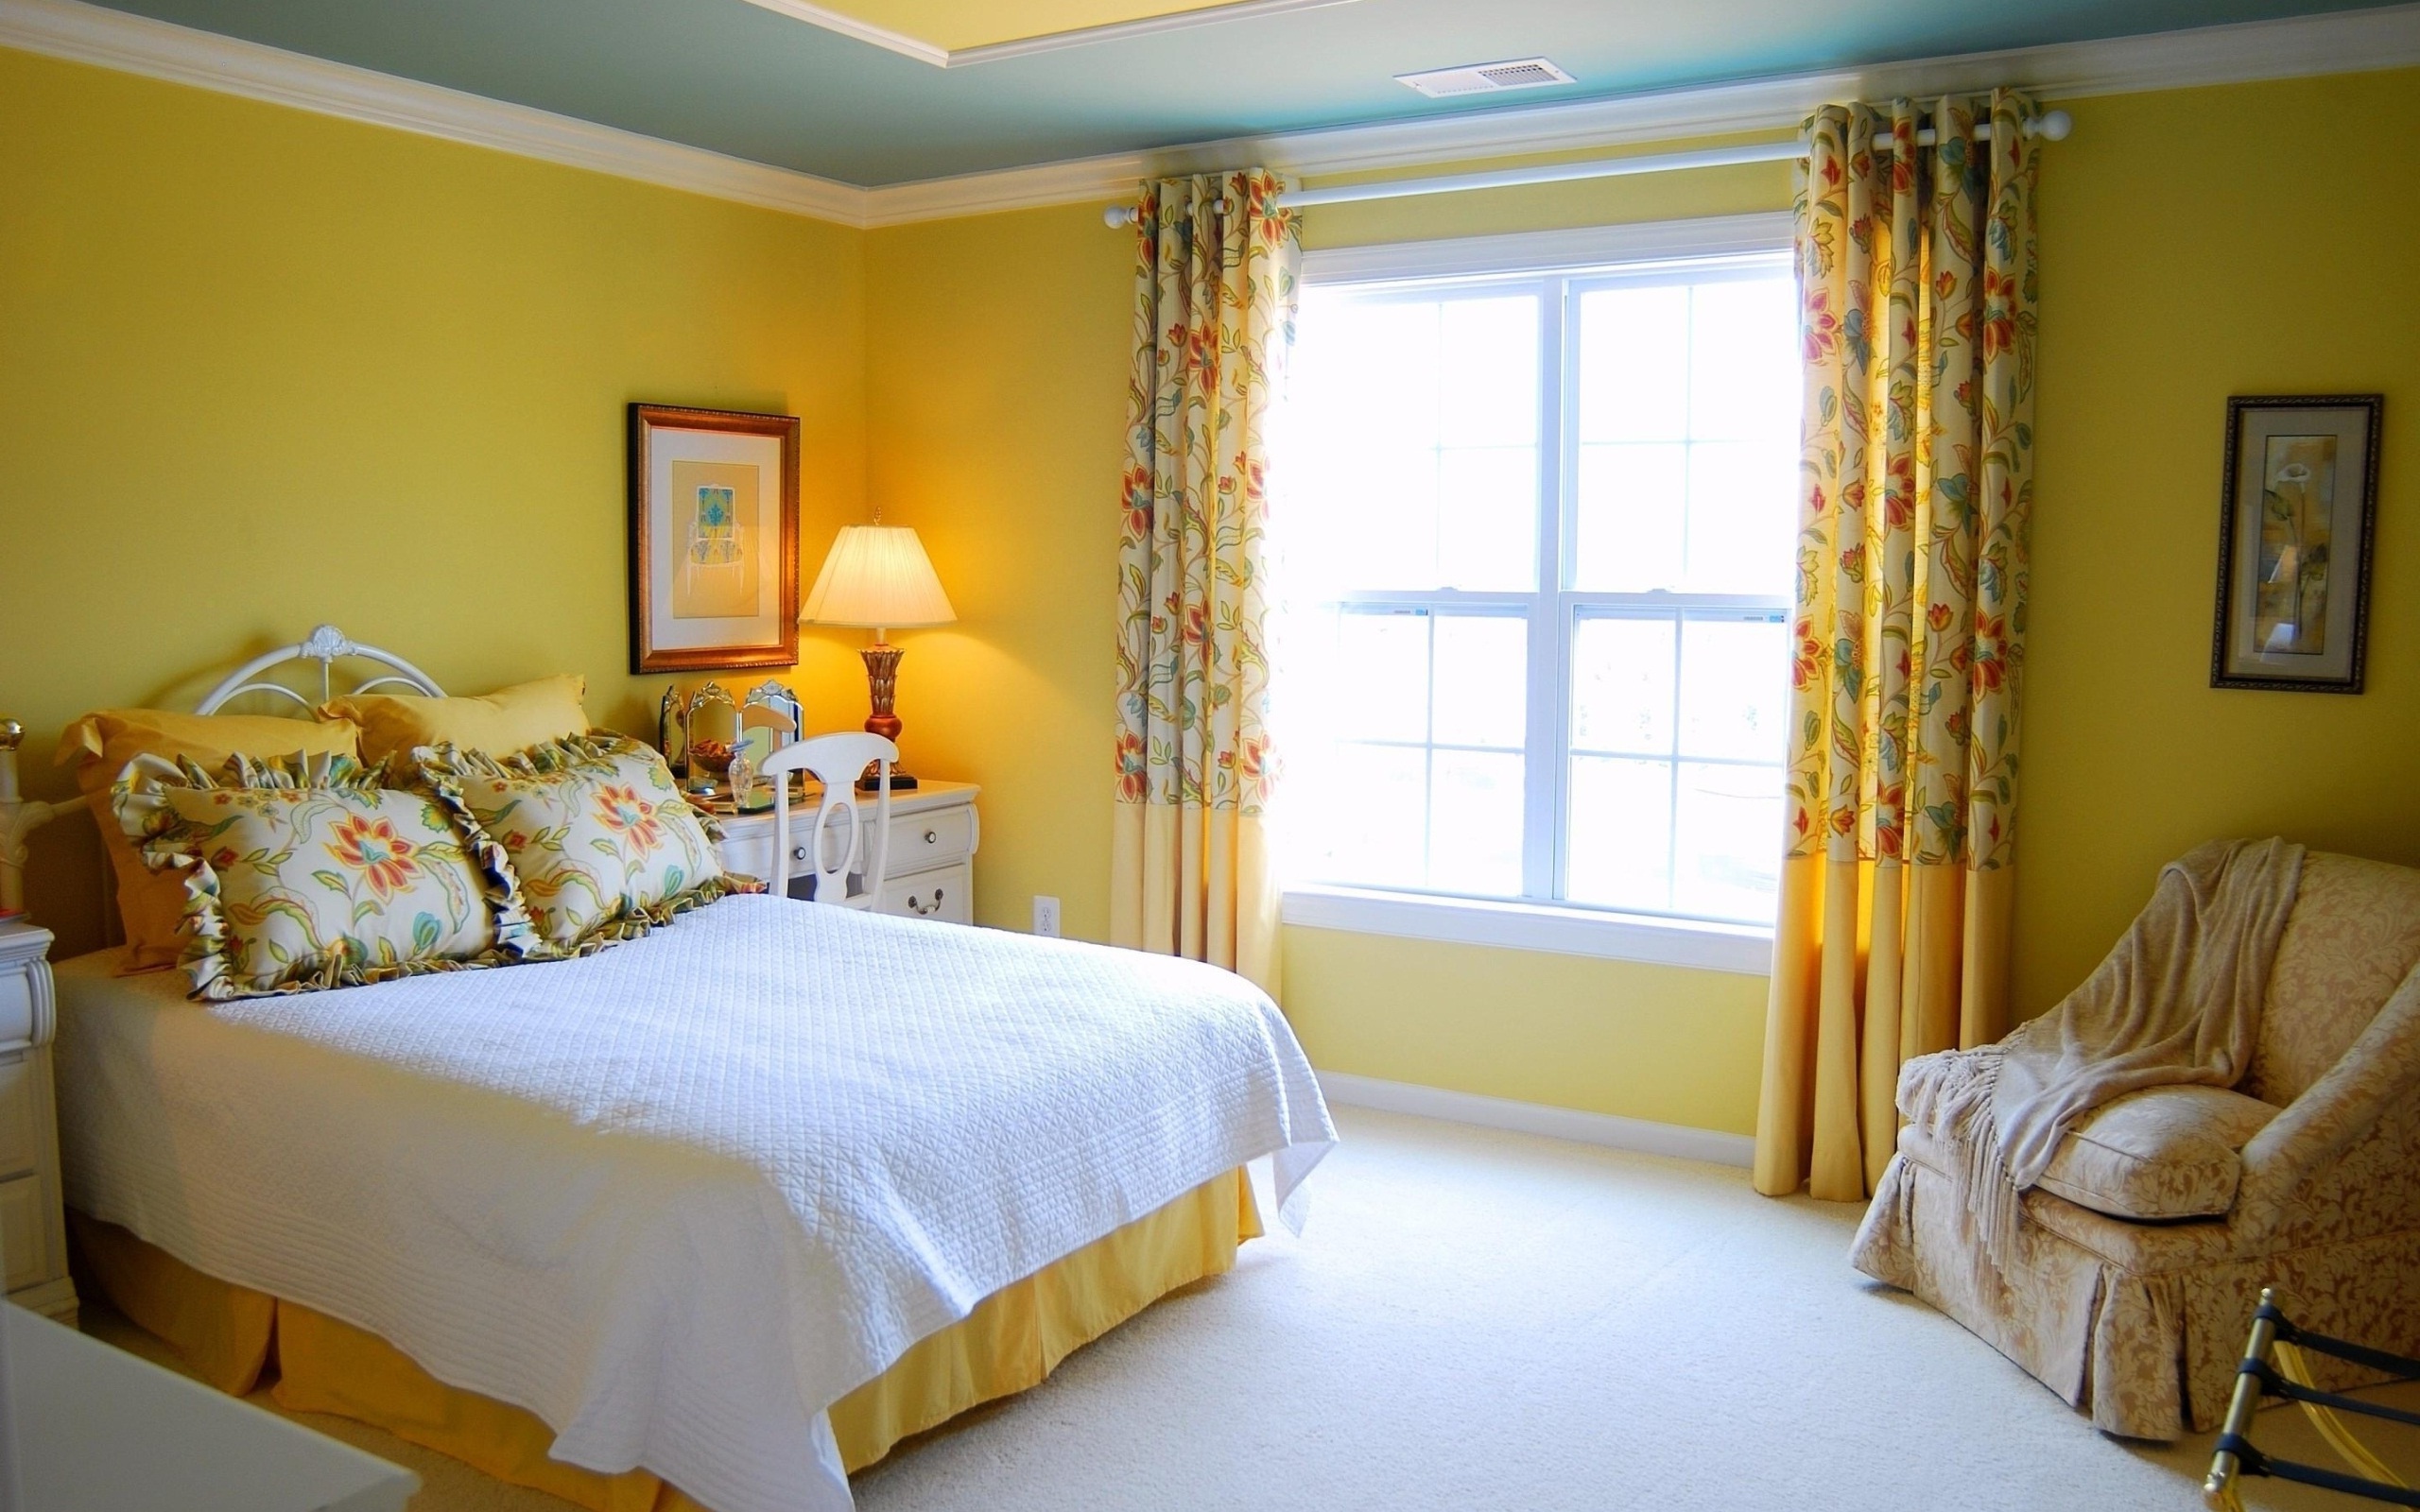 غرفة نوم صفراء 65 صورة غرفة نوم ذات نغمات صفراء لون أصفر في داخل غرفة نوم ضيقة داكنة اللون الأصفر والبرتقالي تصميم غرفة نوم خضراء صفراء